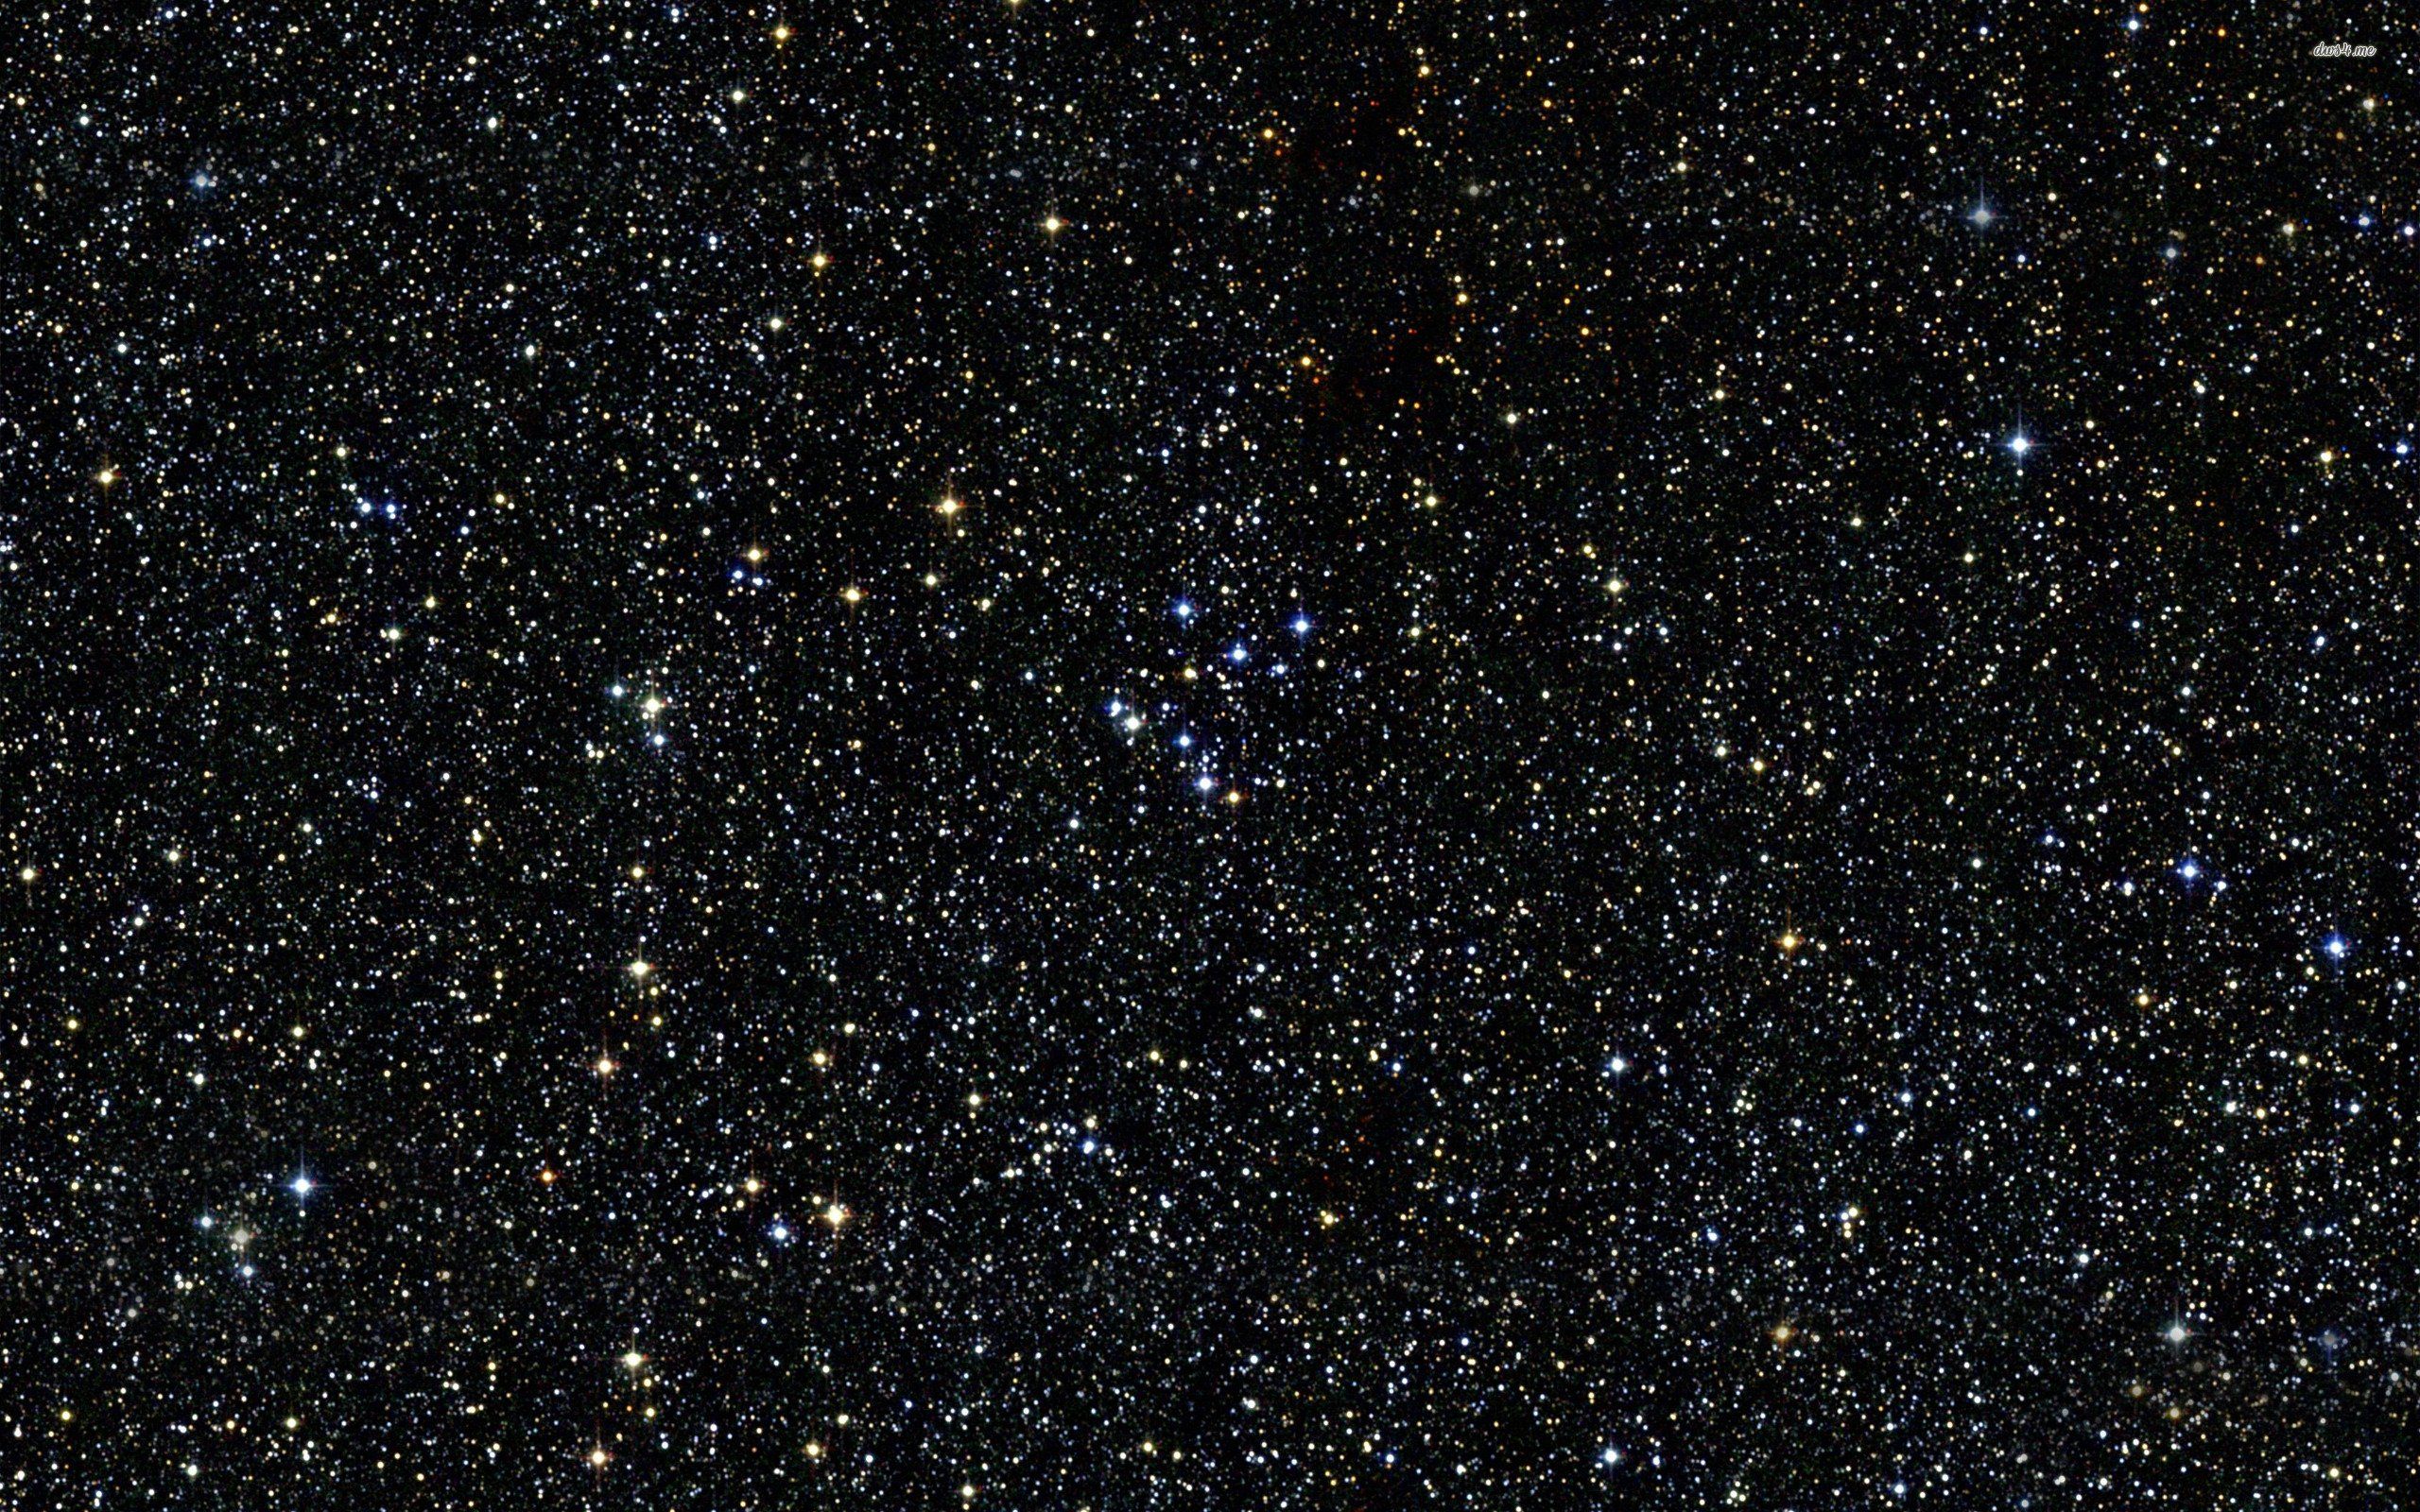 Wallpaper.wiki Universe Star Planet Galaxy PIC WPC009331